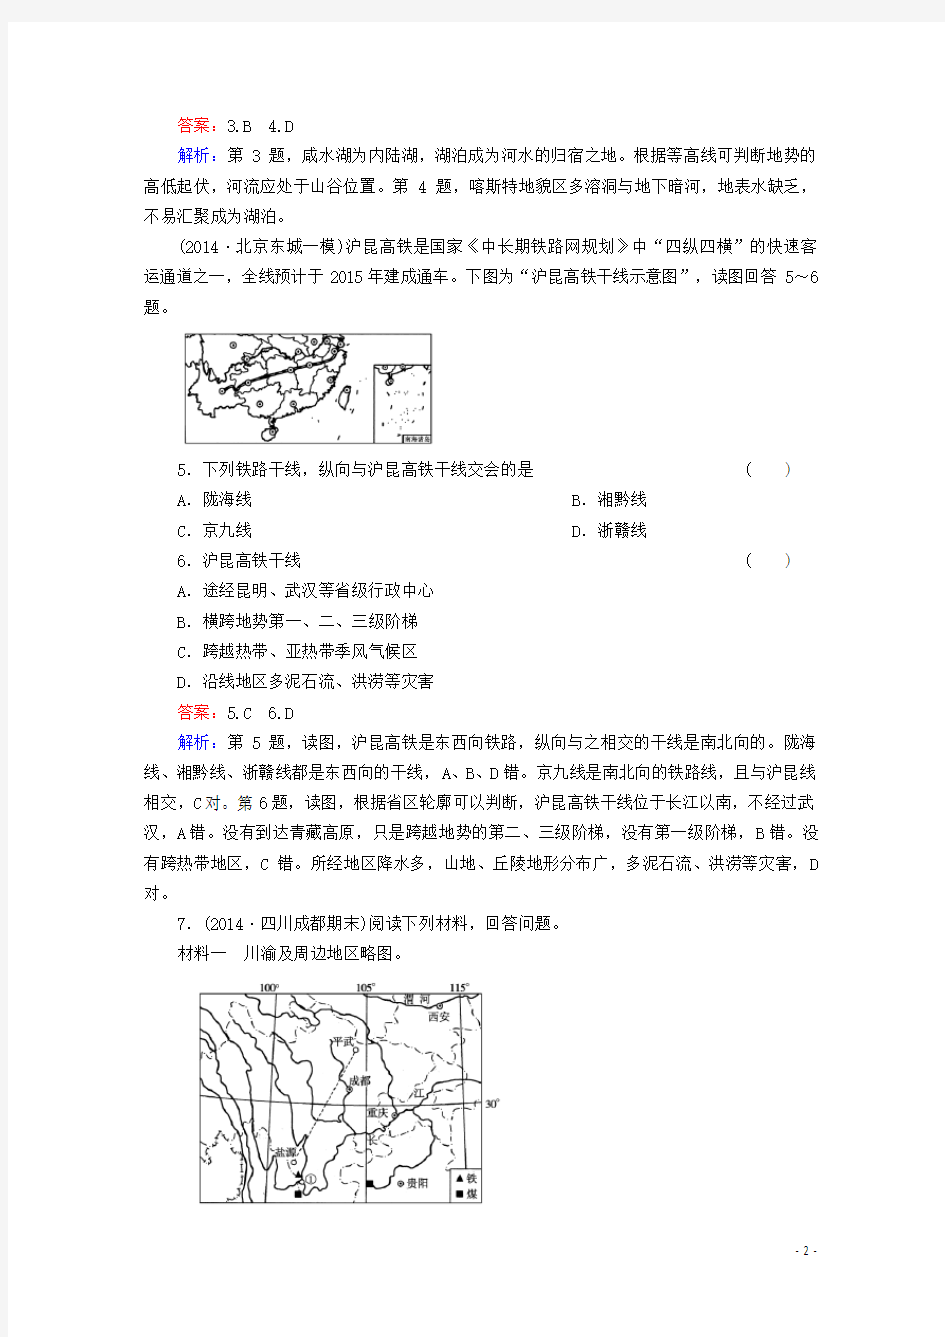 人教版高三地理一轮复习 区域地理 第2章 第1讲 中国地理概况梯级演练